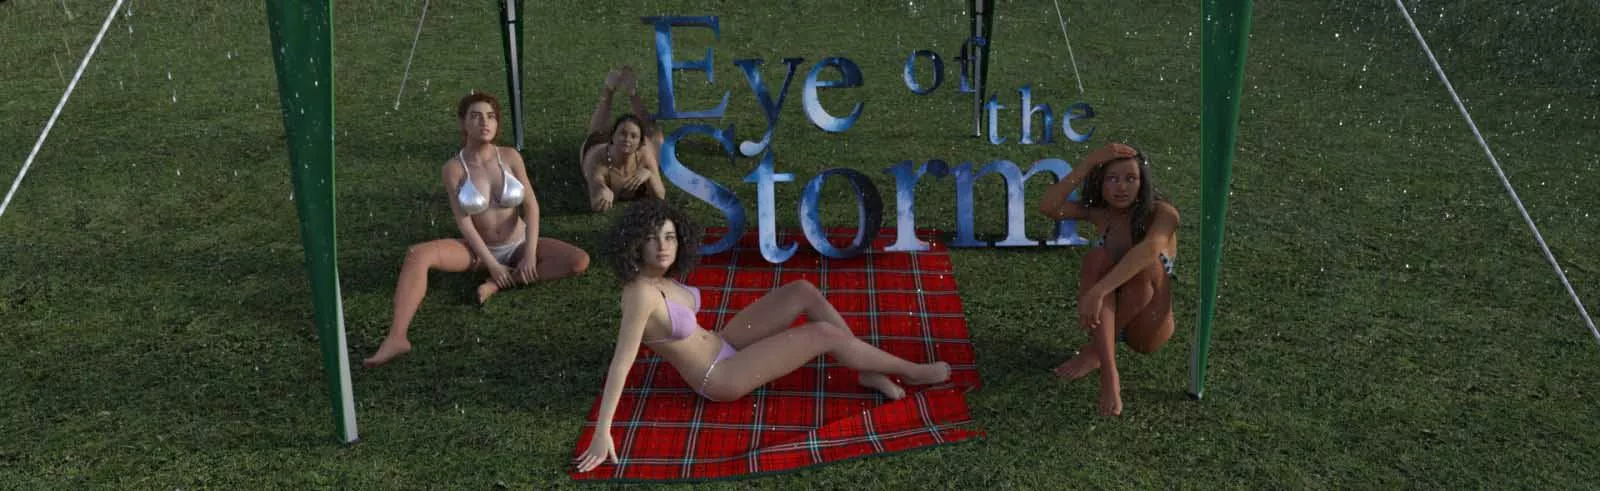 Eye of the Storm 3d kynlíf leikur, 3d fullorðinn leikur, leikur xxx